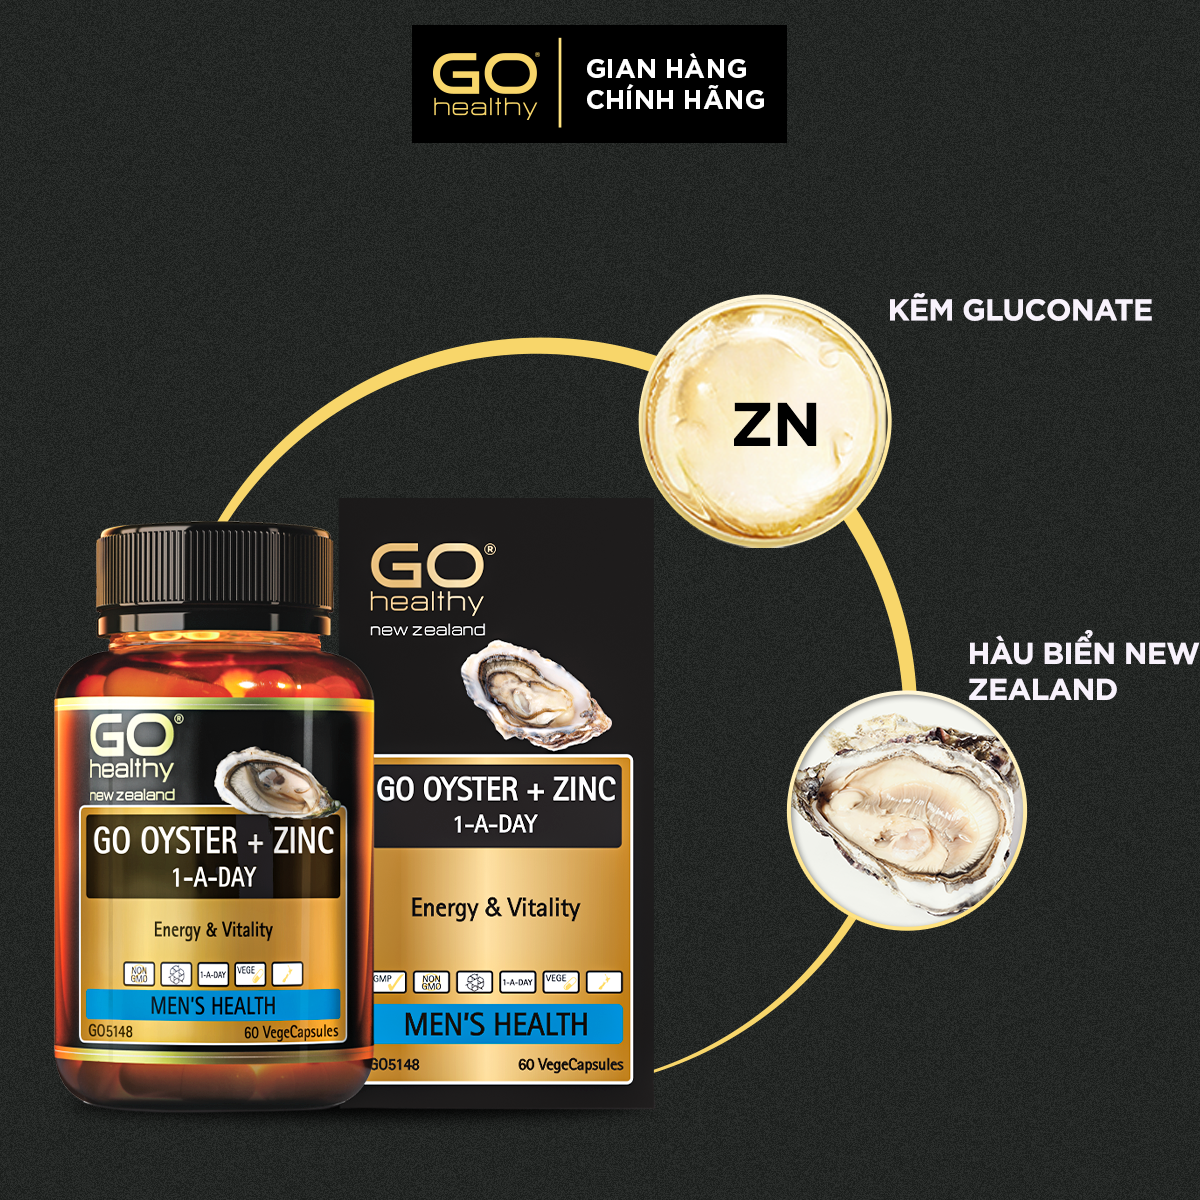 Hình ảnh GO OYSTER + ZINC 1-A-DAY 30 VIÊN - Tinh chất hàu nhập khẩu chính hãng GO Healthy New Zealand